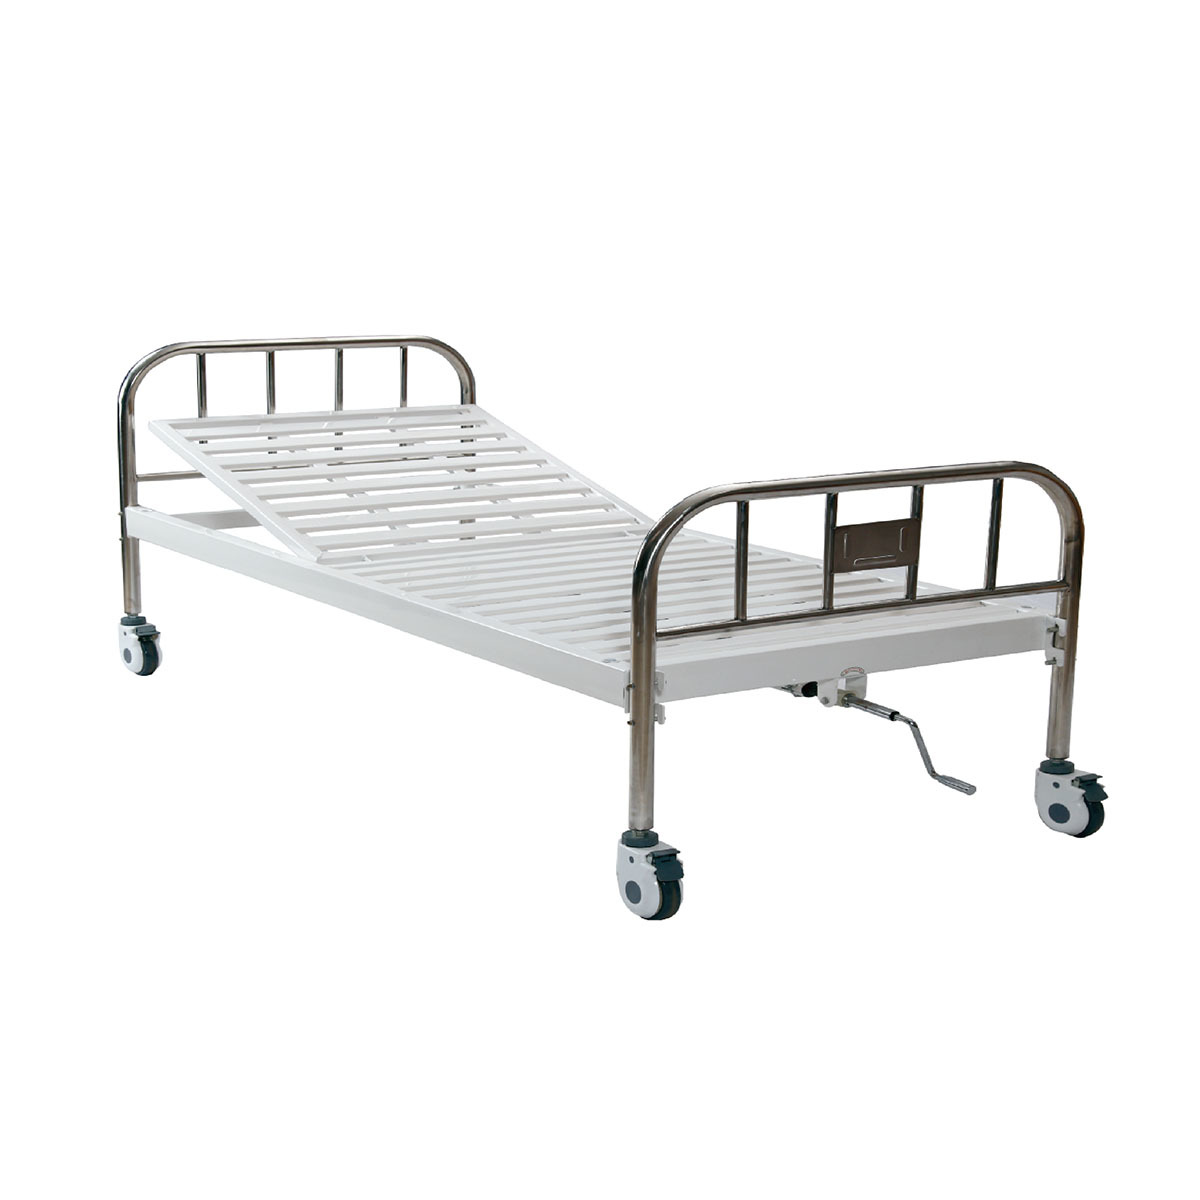 HL-A120D Manual  Hospital Bed